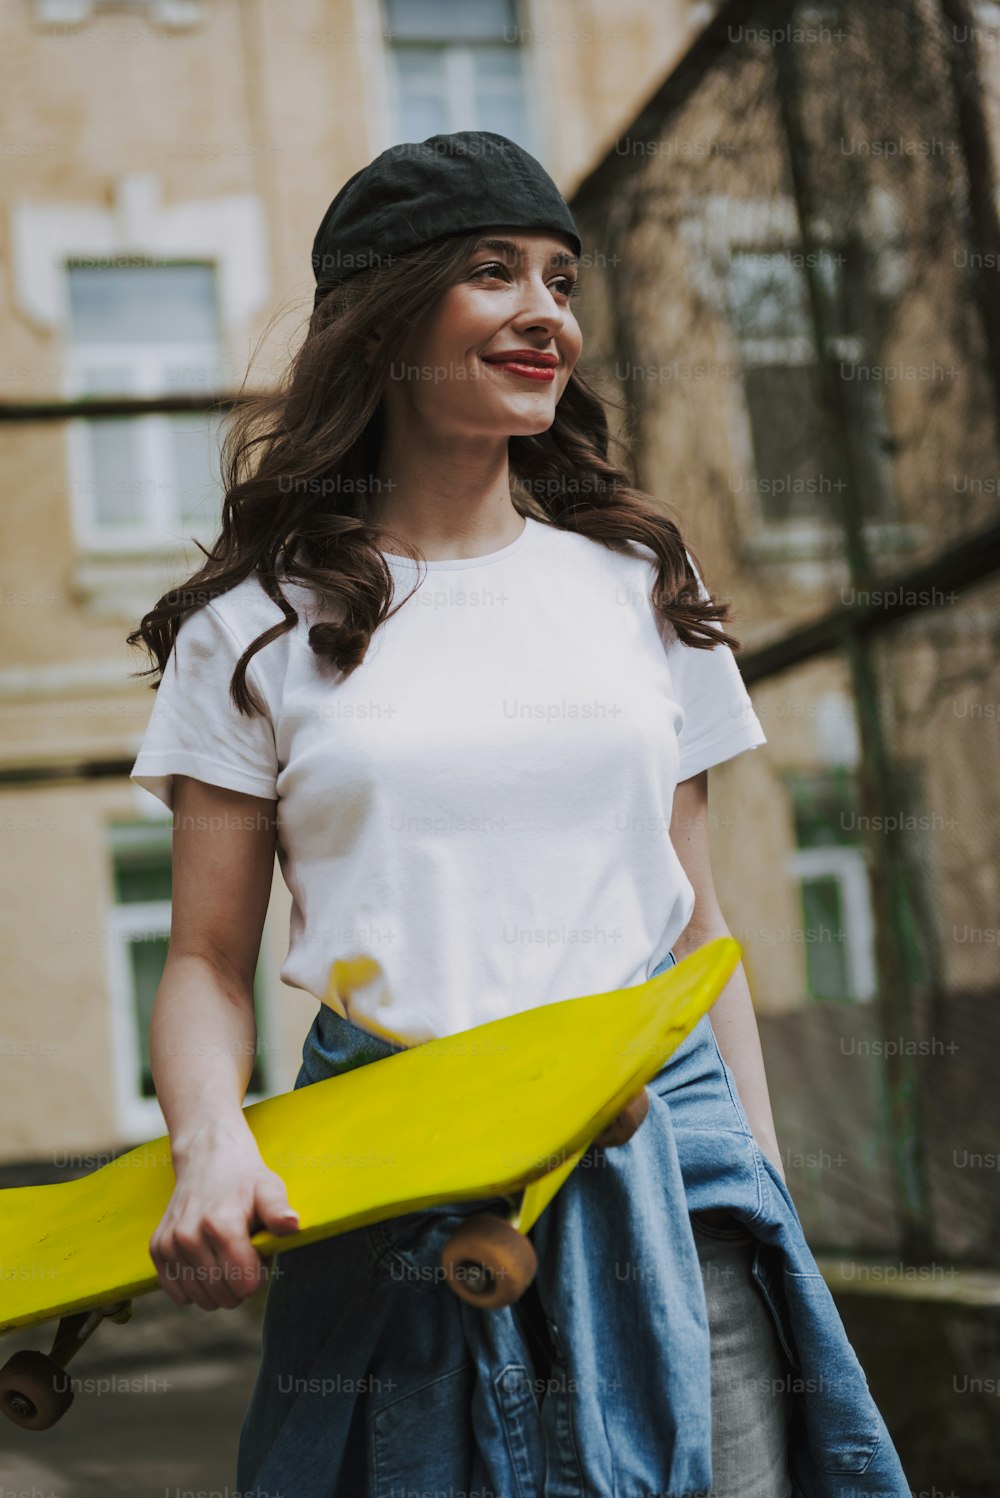 Mode de vie urbain et activité sportive. Portrait de taille d’une jeune femme heureuse hipster élégante tenant une planche à roulettes jaune et marchant sur fond de ville